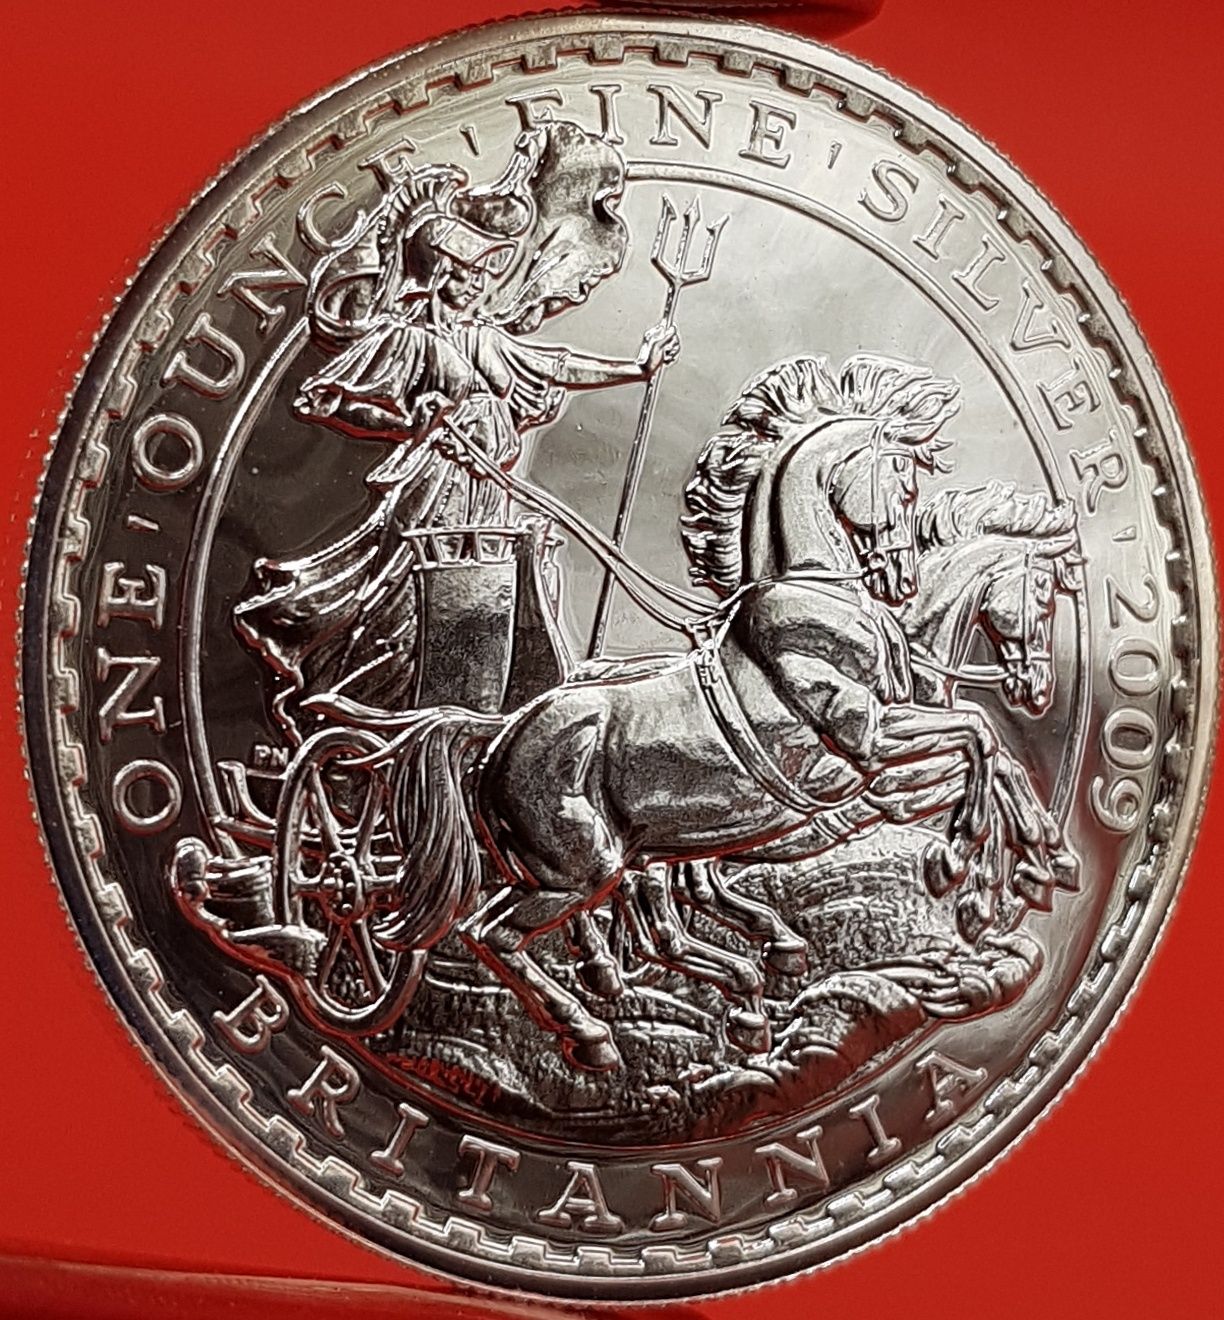 Marea Britanie Britannia monede lingou argint 999